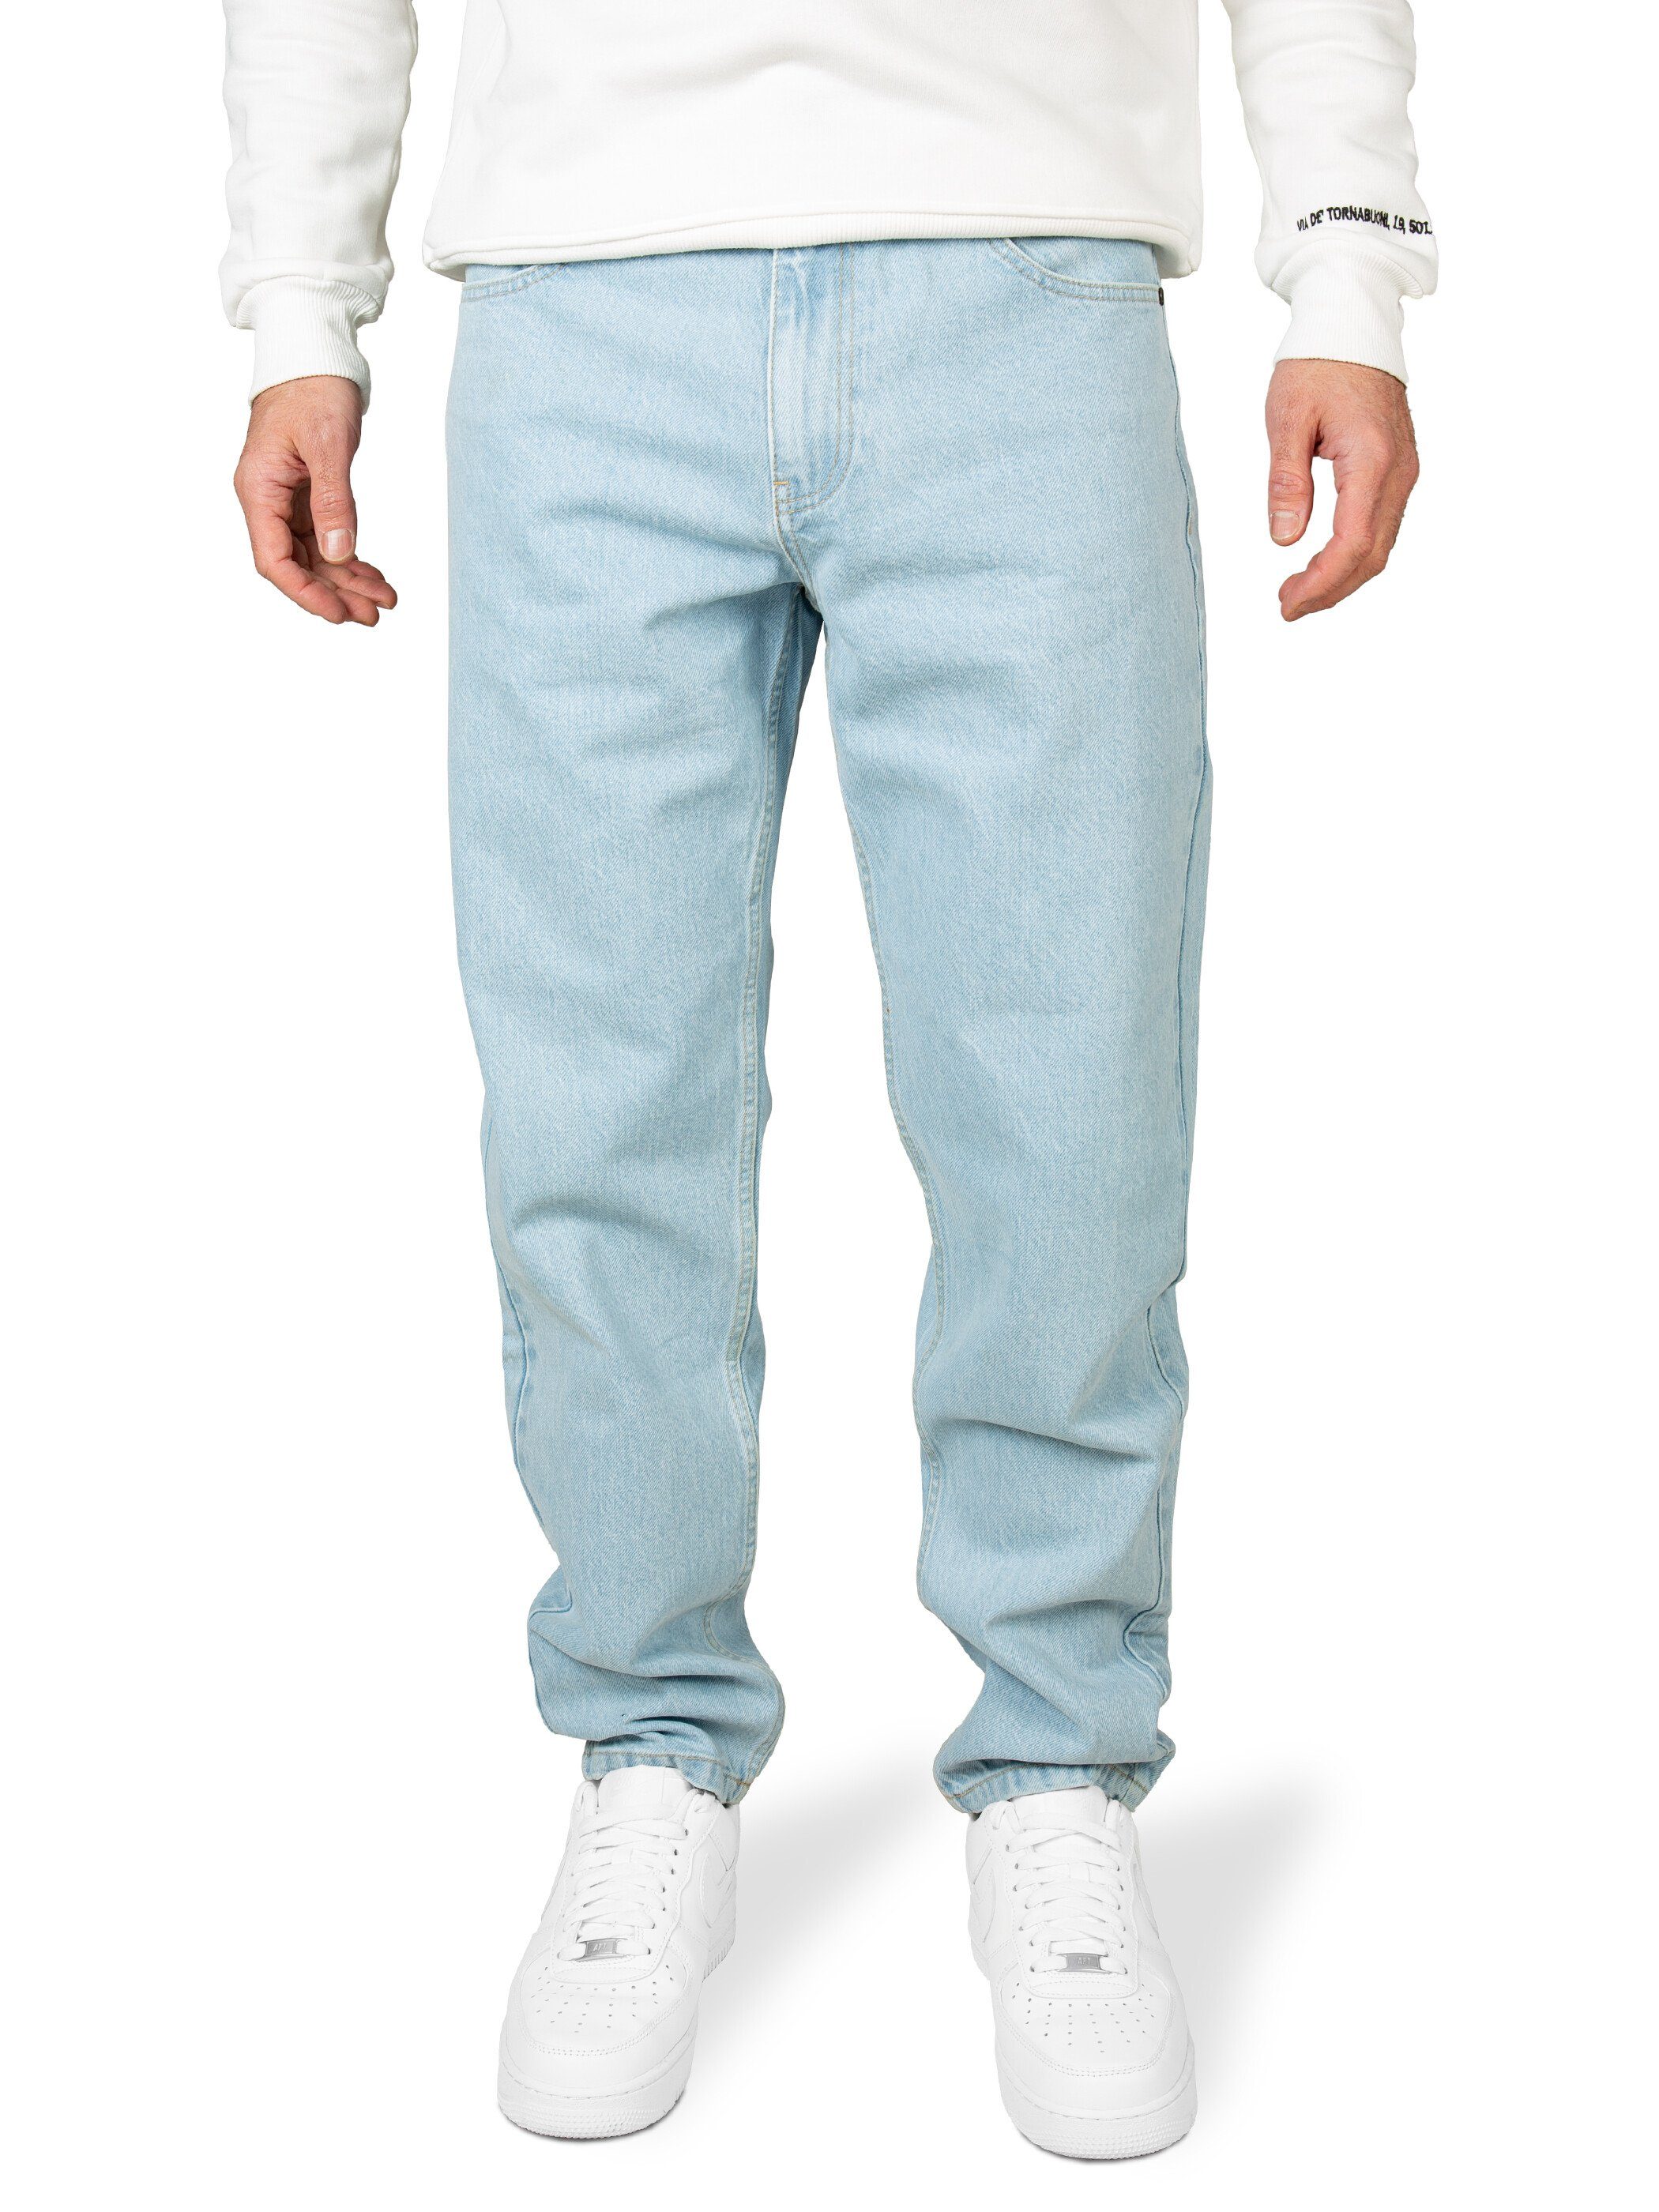 Pittman Loose-fit-Jeans Titan Herren Jeans bequeme Baumwoll Jeans Blau (Dusty Blue 164010) | Weite Jeans